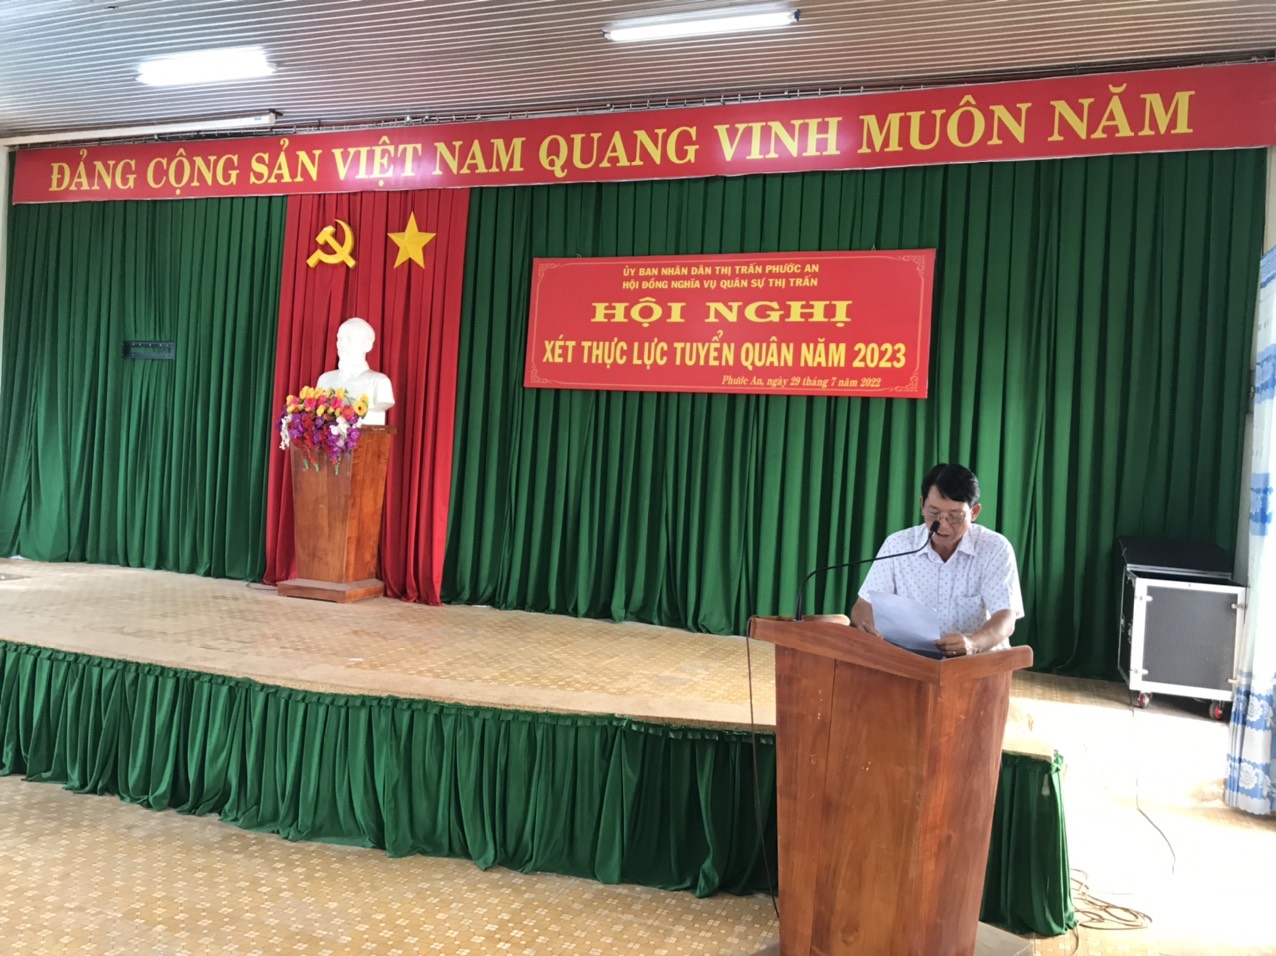 UBND thị trấn Phước An tổ chức Hội nghị xét duyệt thực lực tuyển chọn, gọi công dân nhập ngũ năm 2023